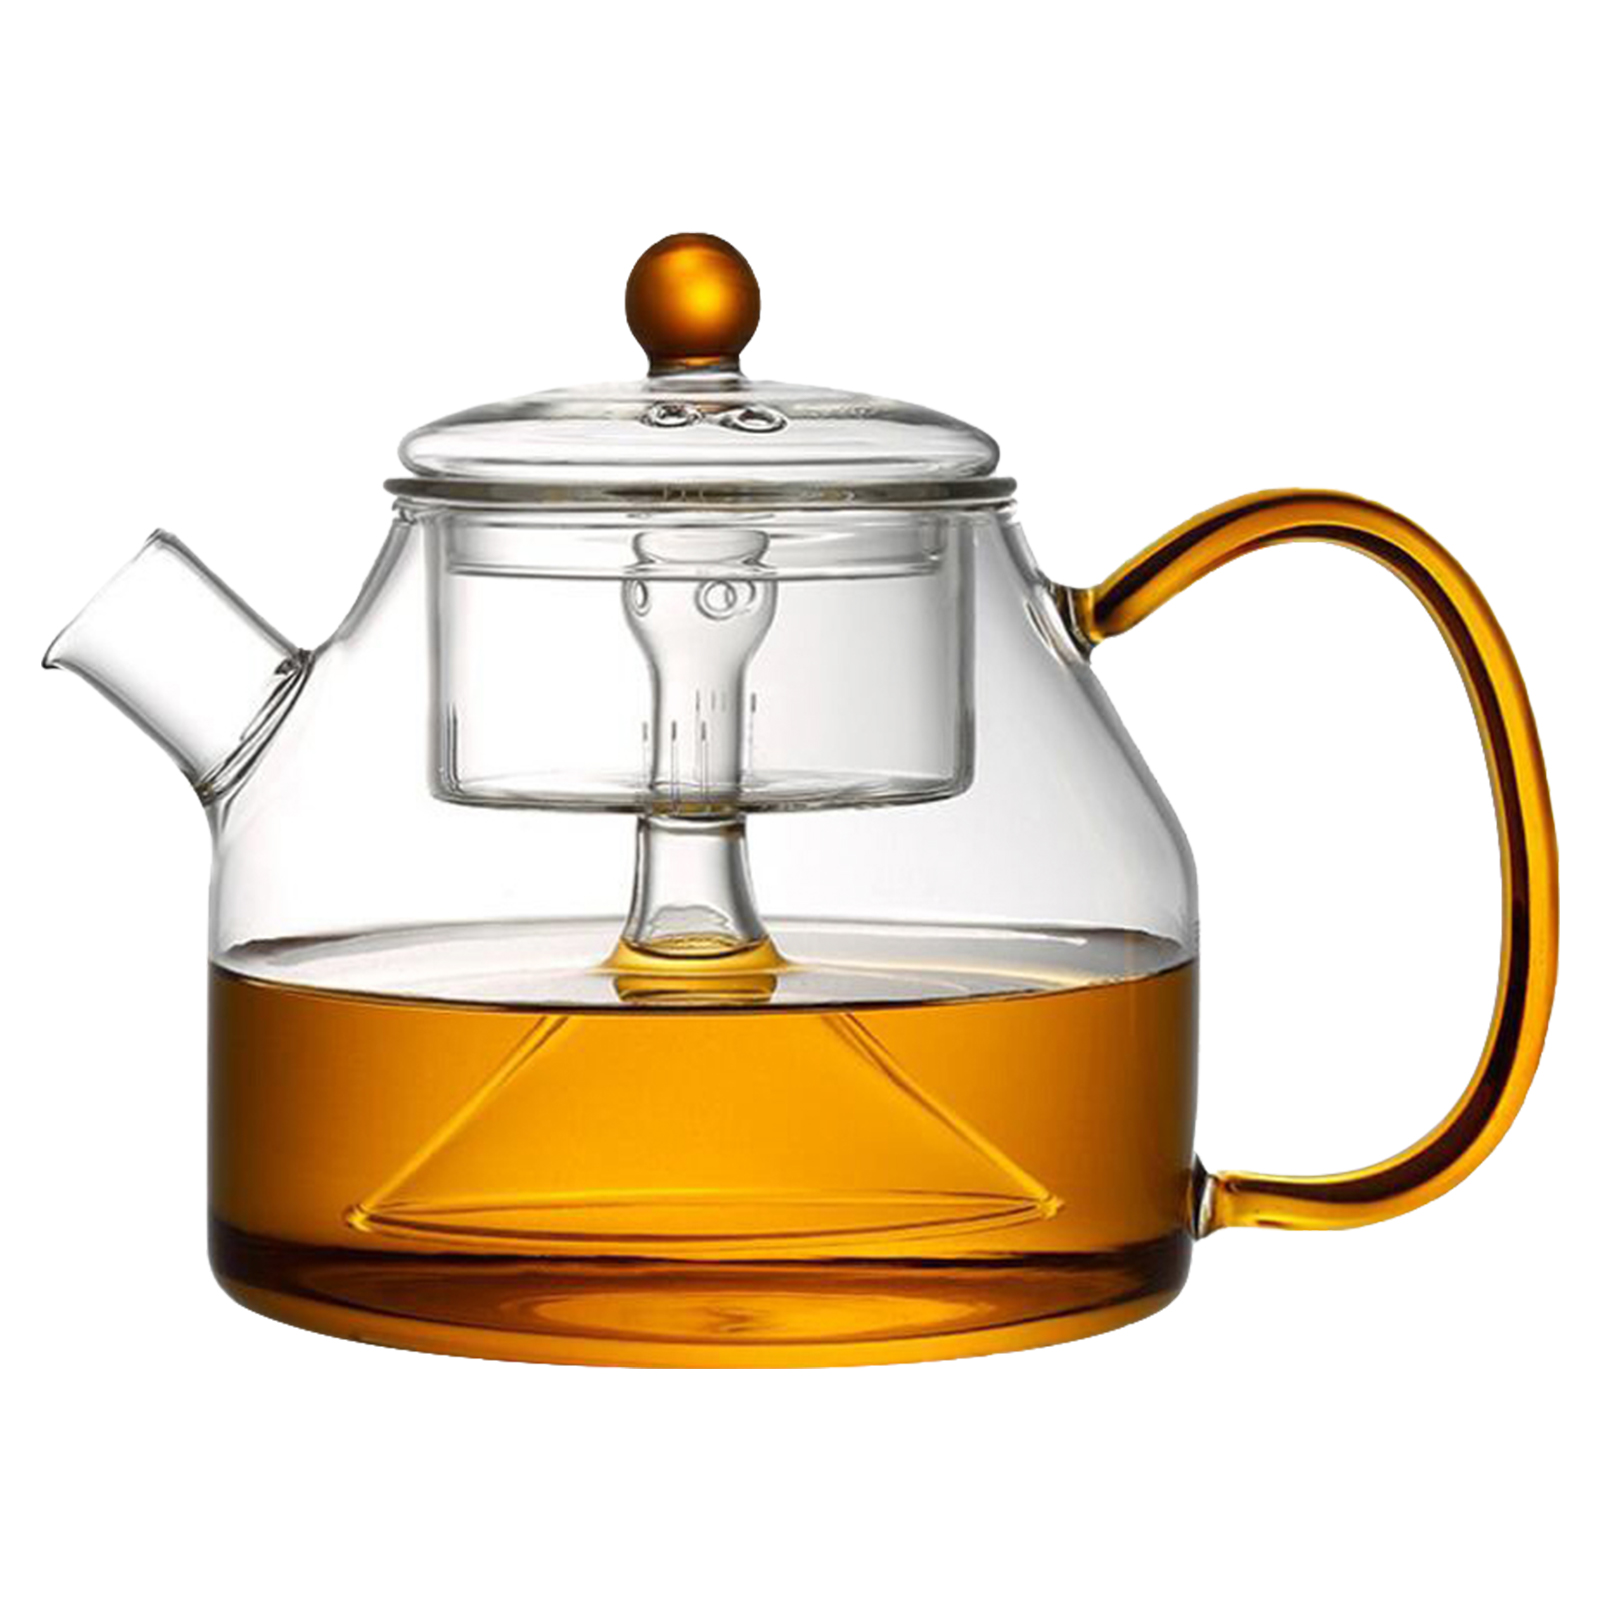 Чайник с фильтром пропаривания чая, 1200 мл, 16х13 см, MARMA  MM-TPT-15